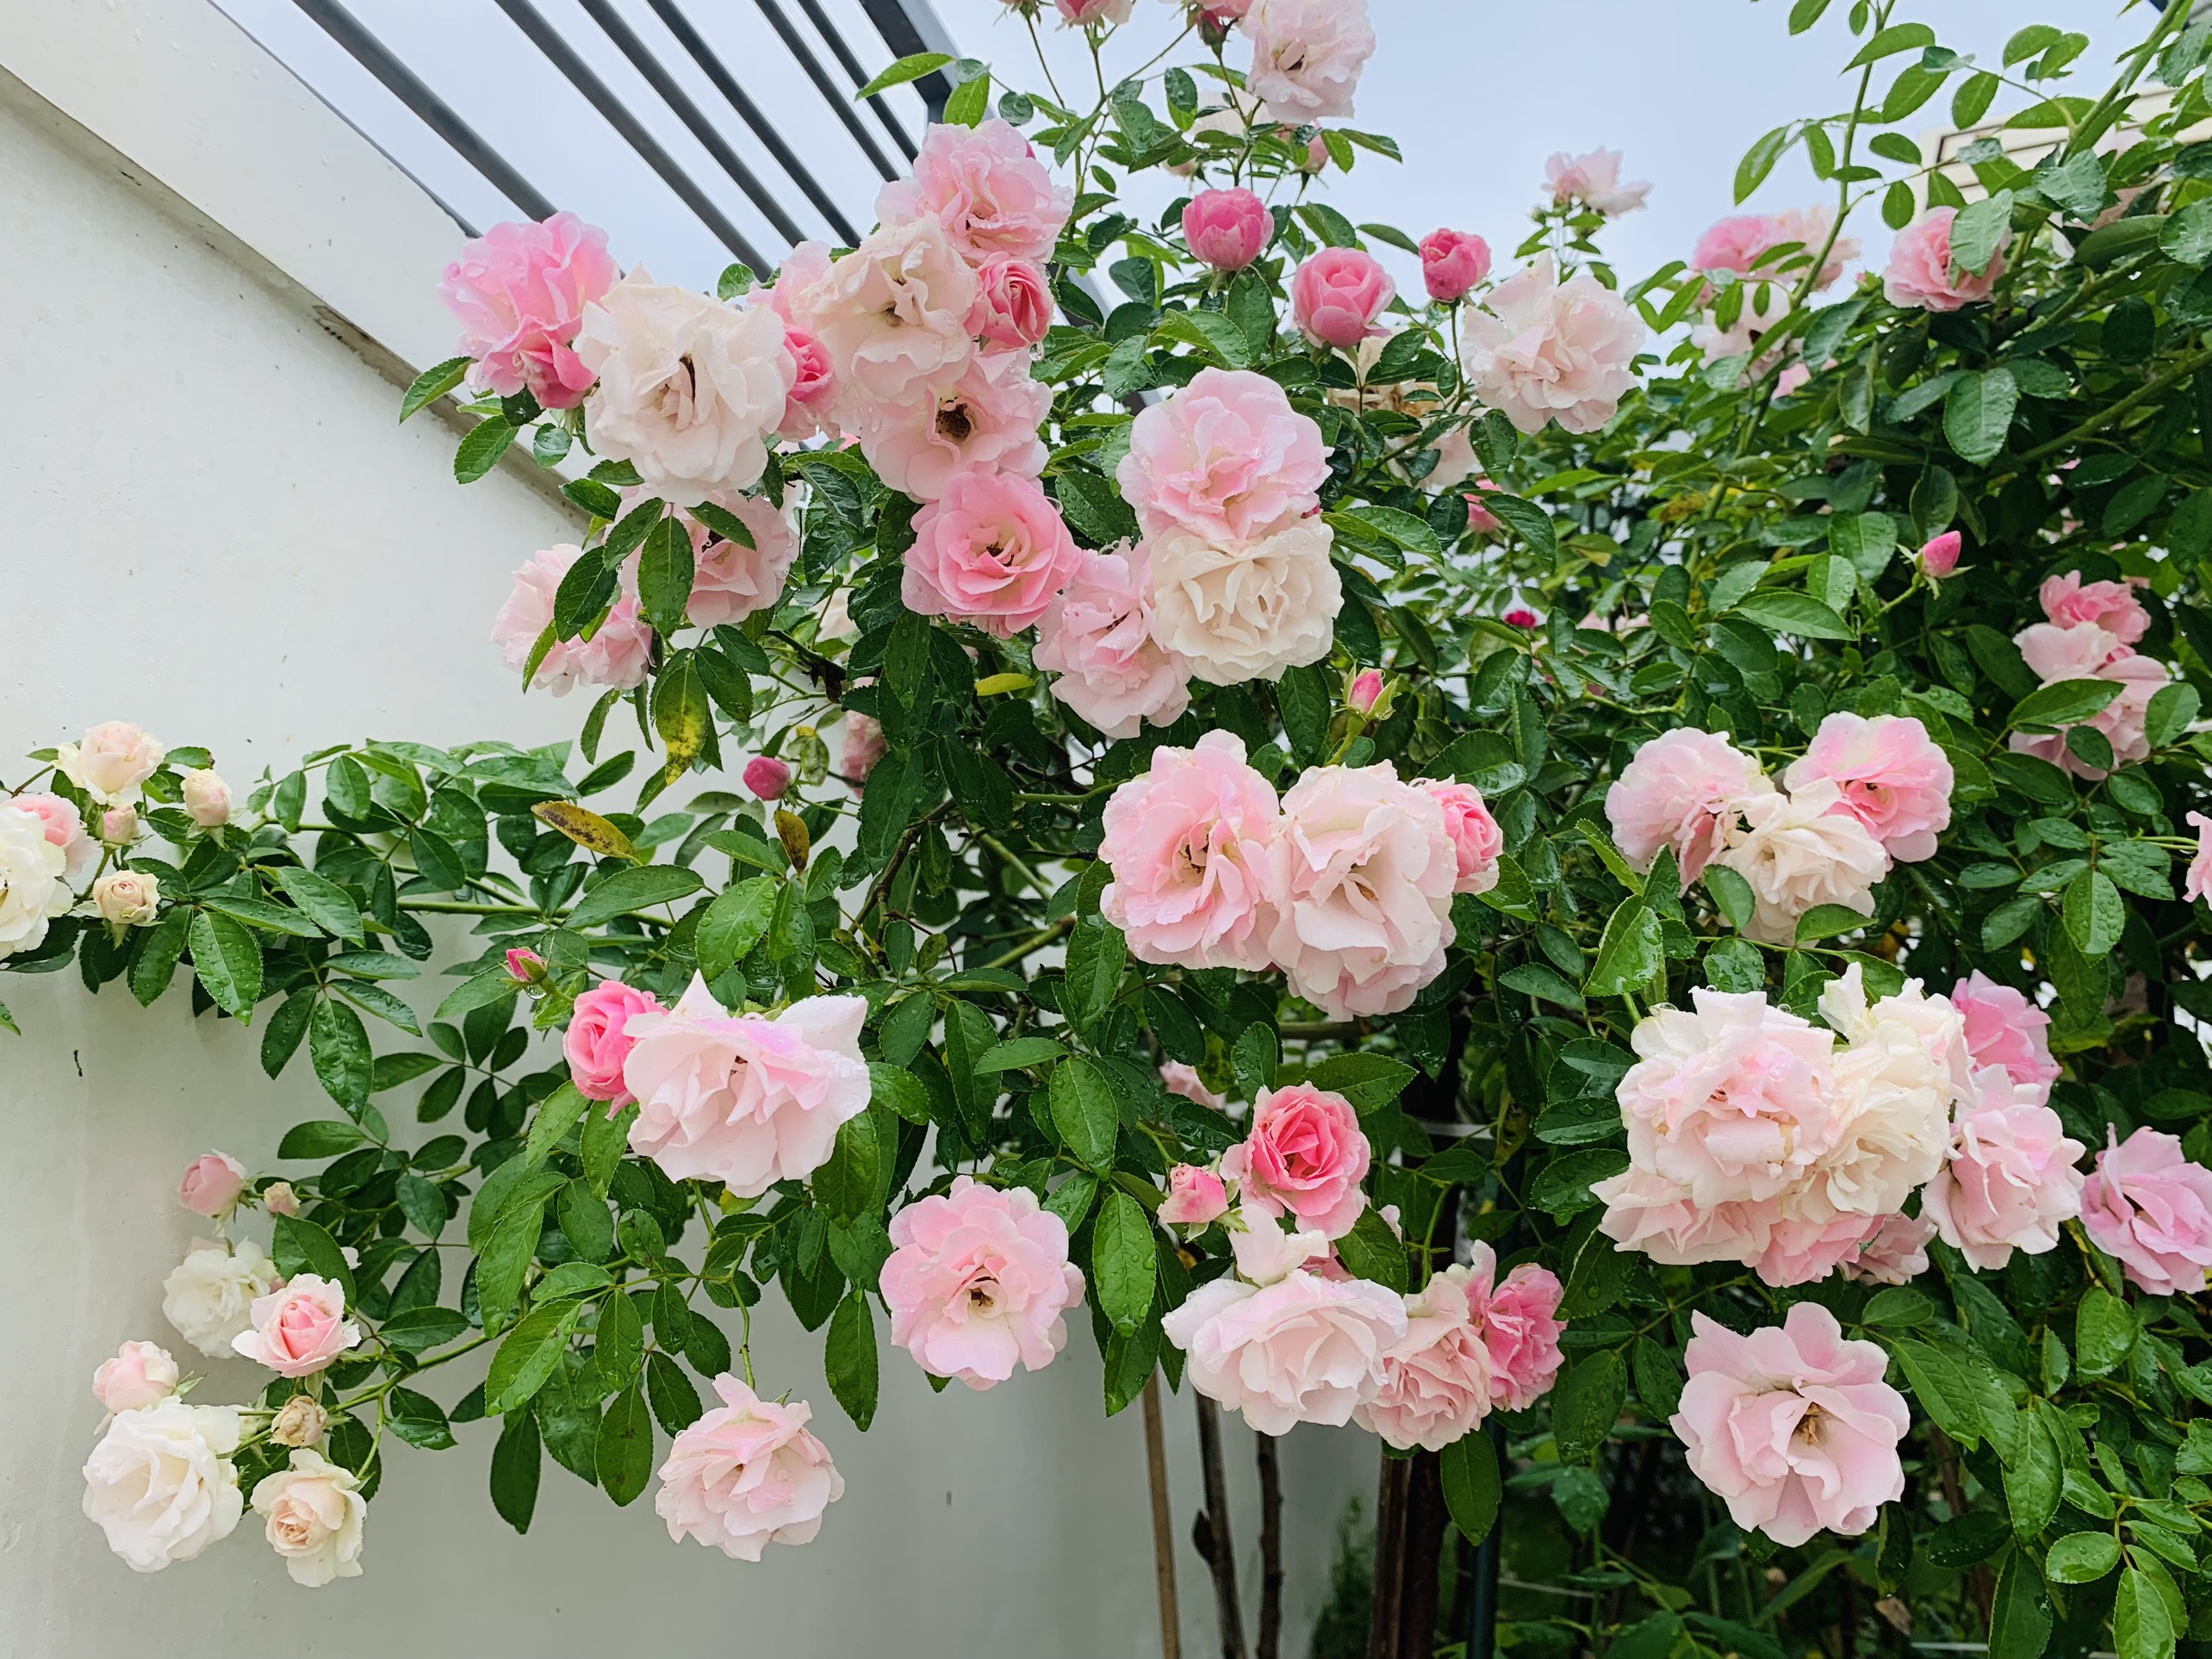 Ngất ngây với vườn hoa hồng Pháp tuyệt đẹp được tham quan miễn phí dịp Tết   Báo Người lao động